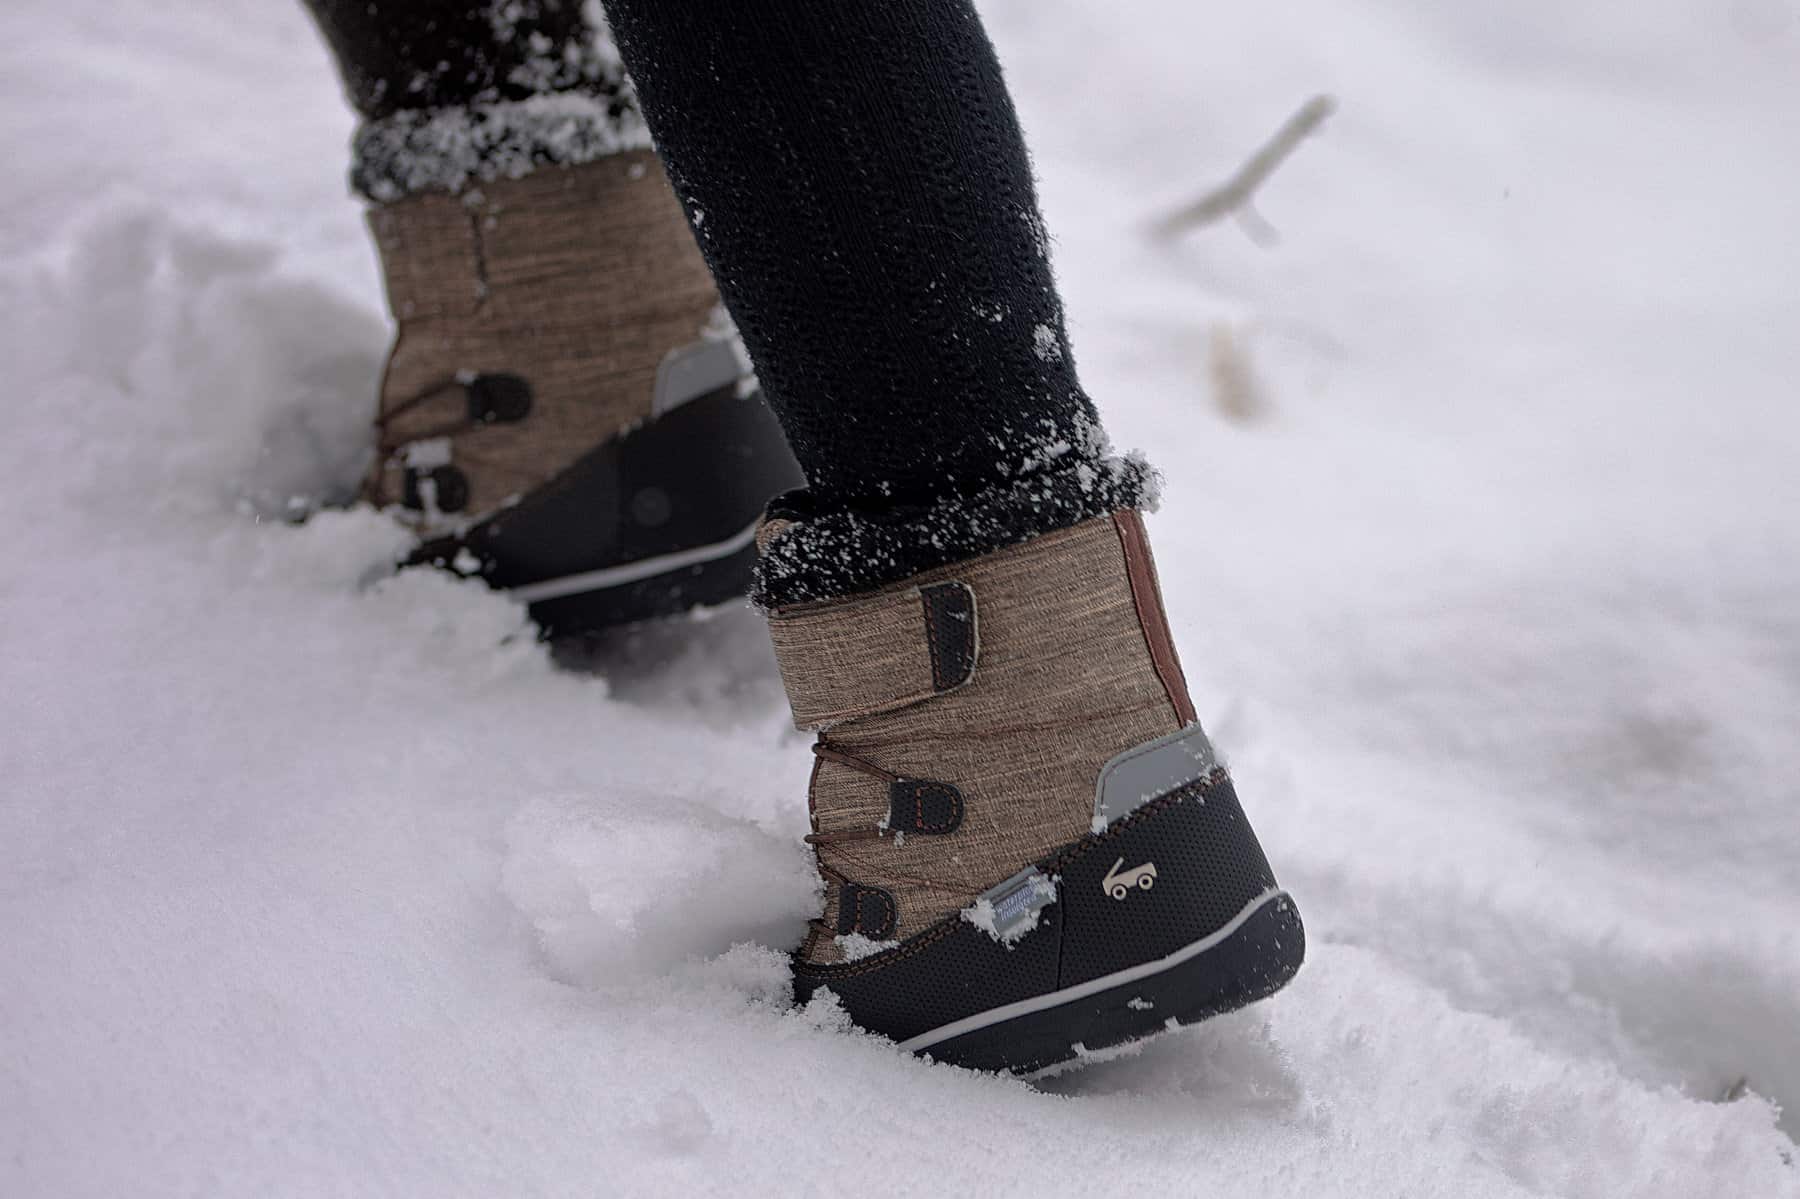 Best Kids' Winter Boots • RUN WILD MY CHILD